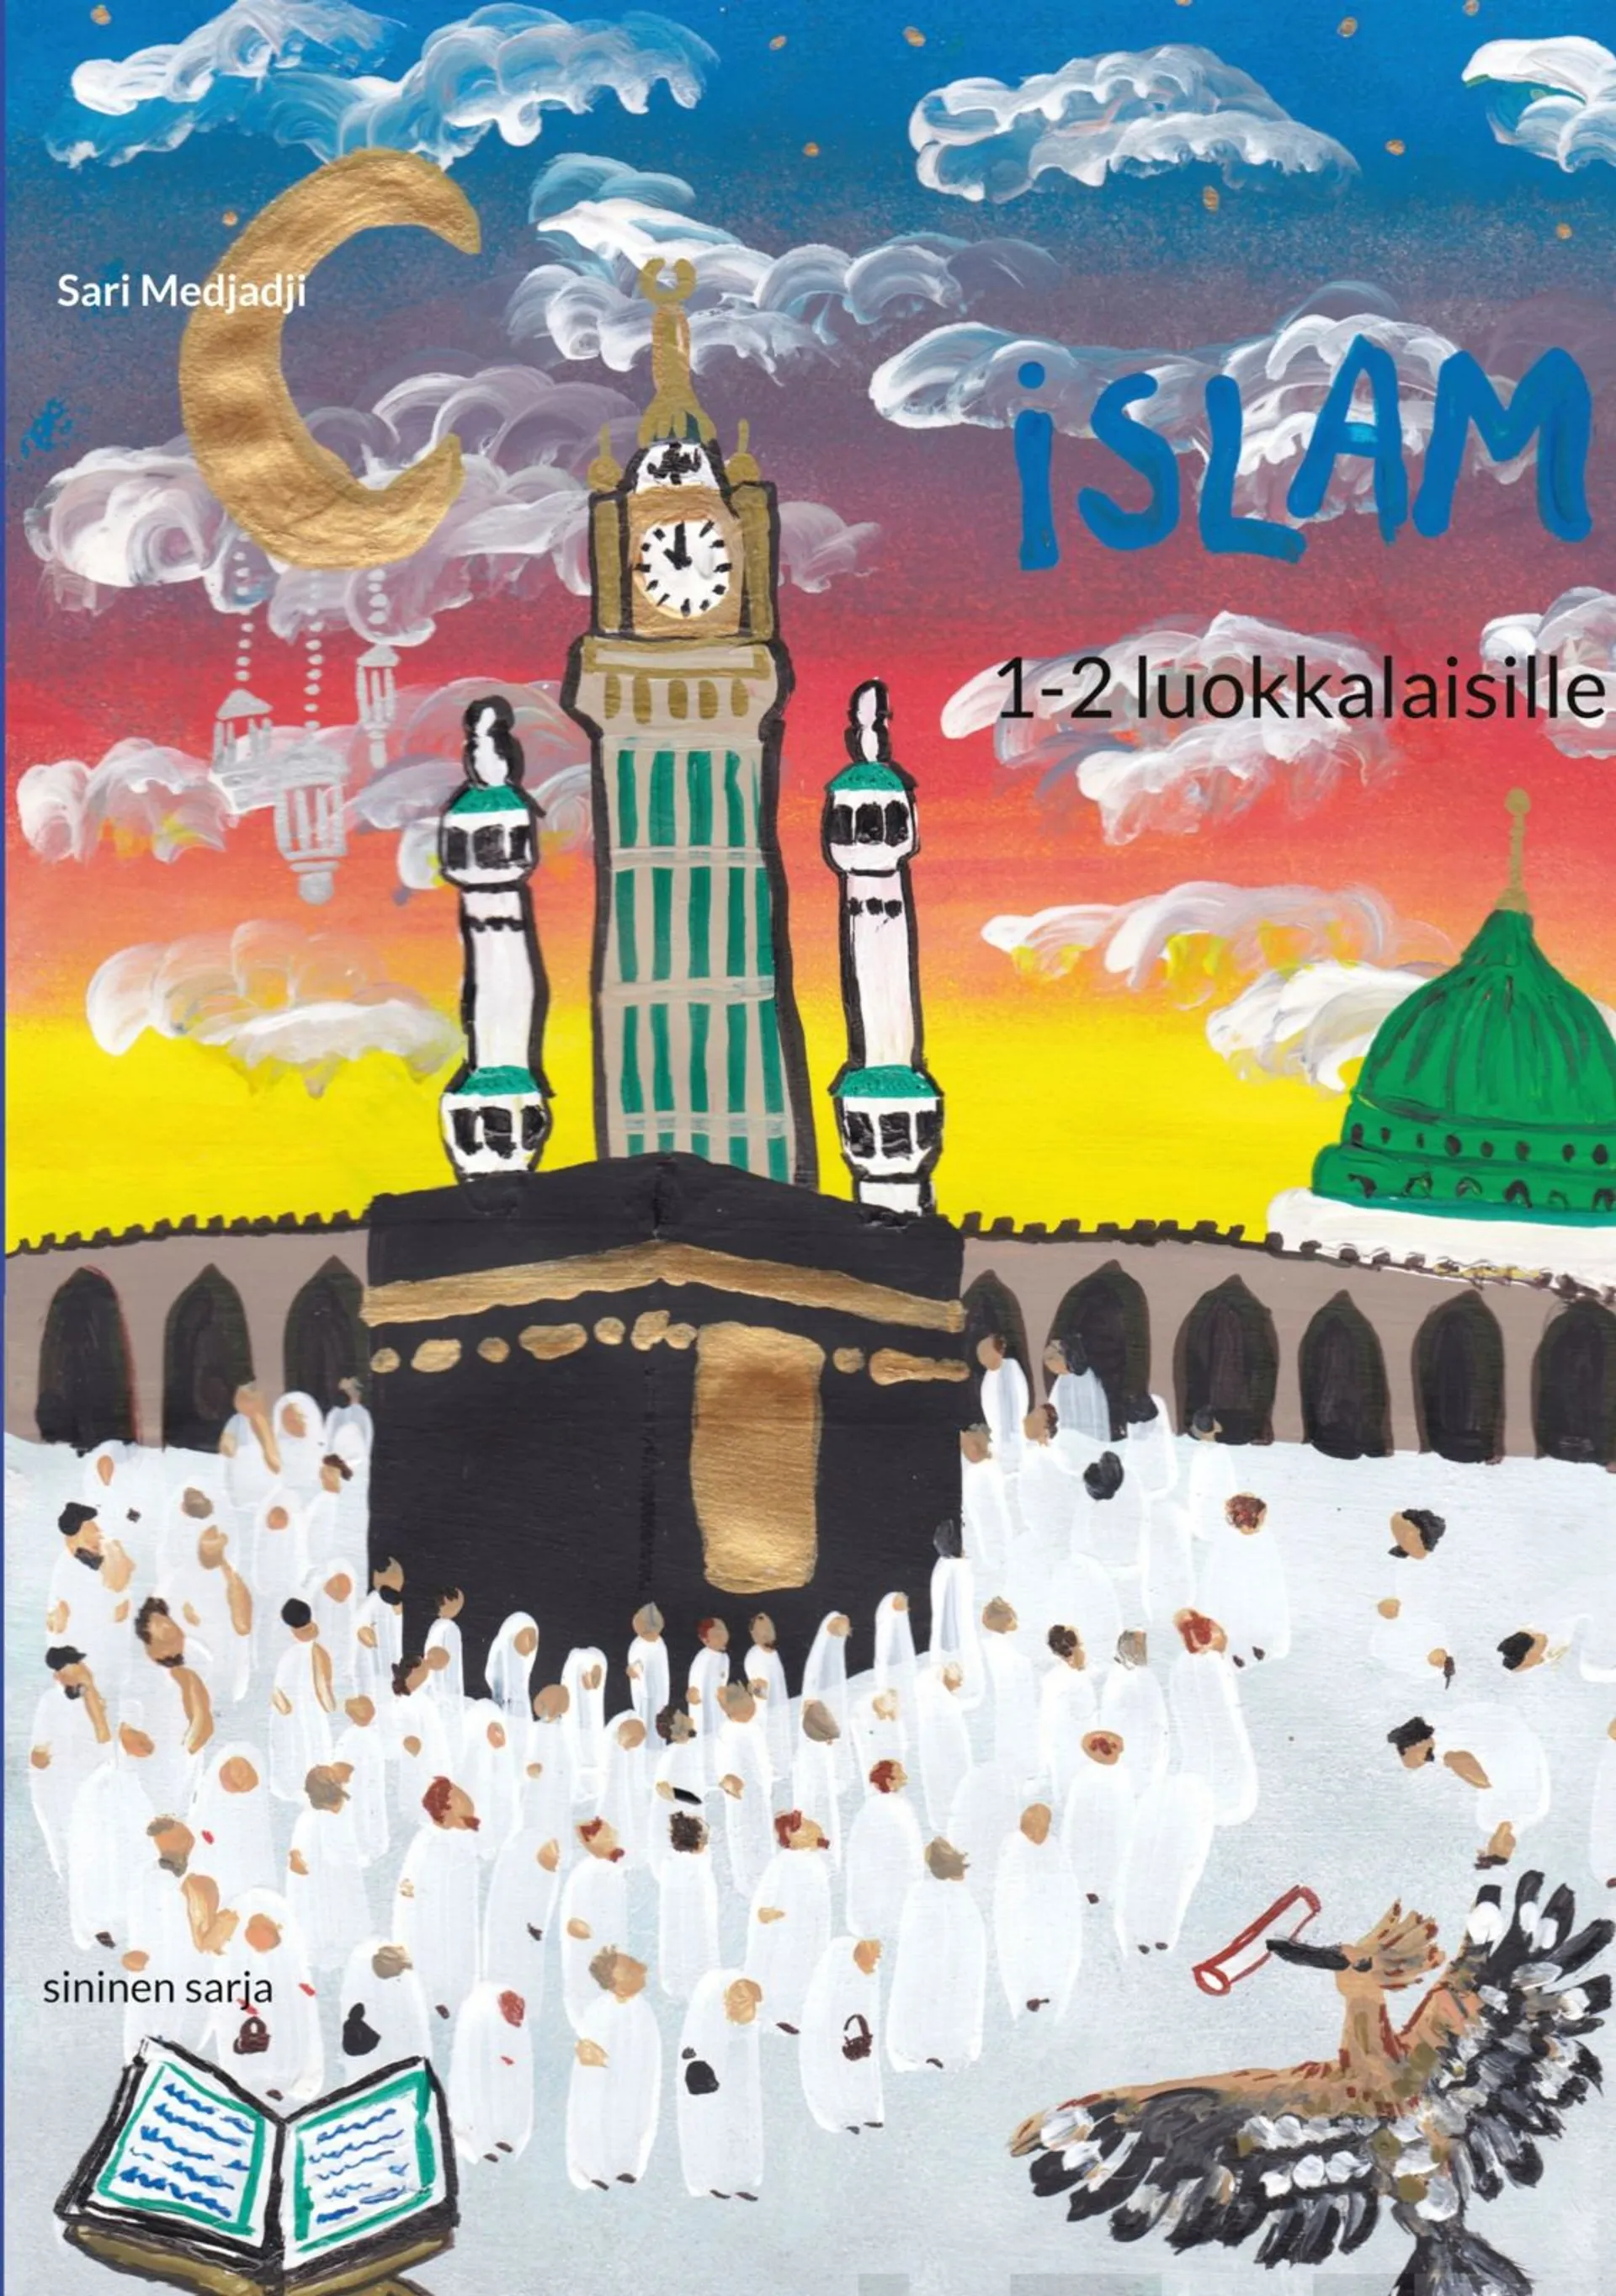 Medjadji, Islam 1-2 luokkalaisille - sininen sarja